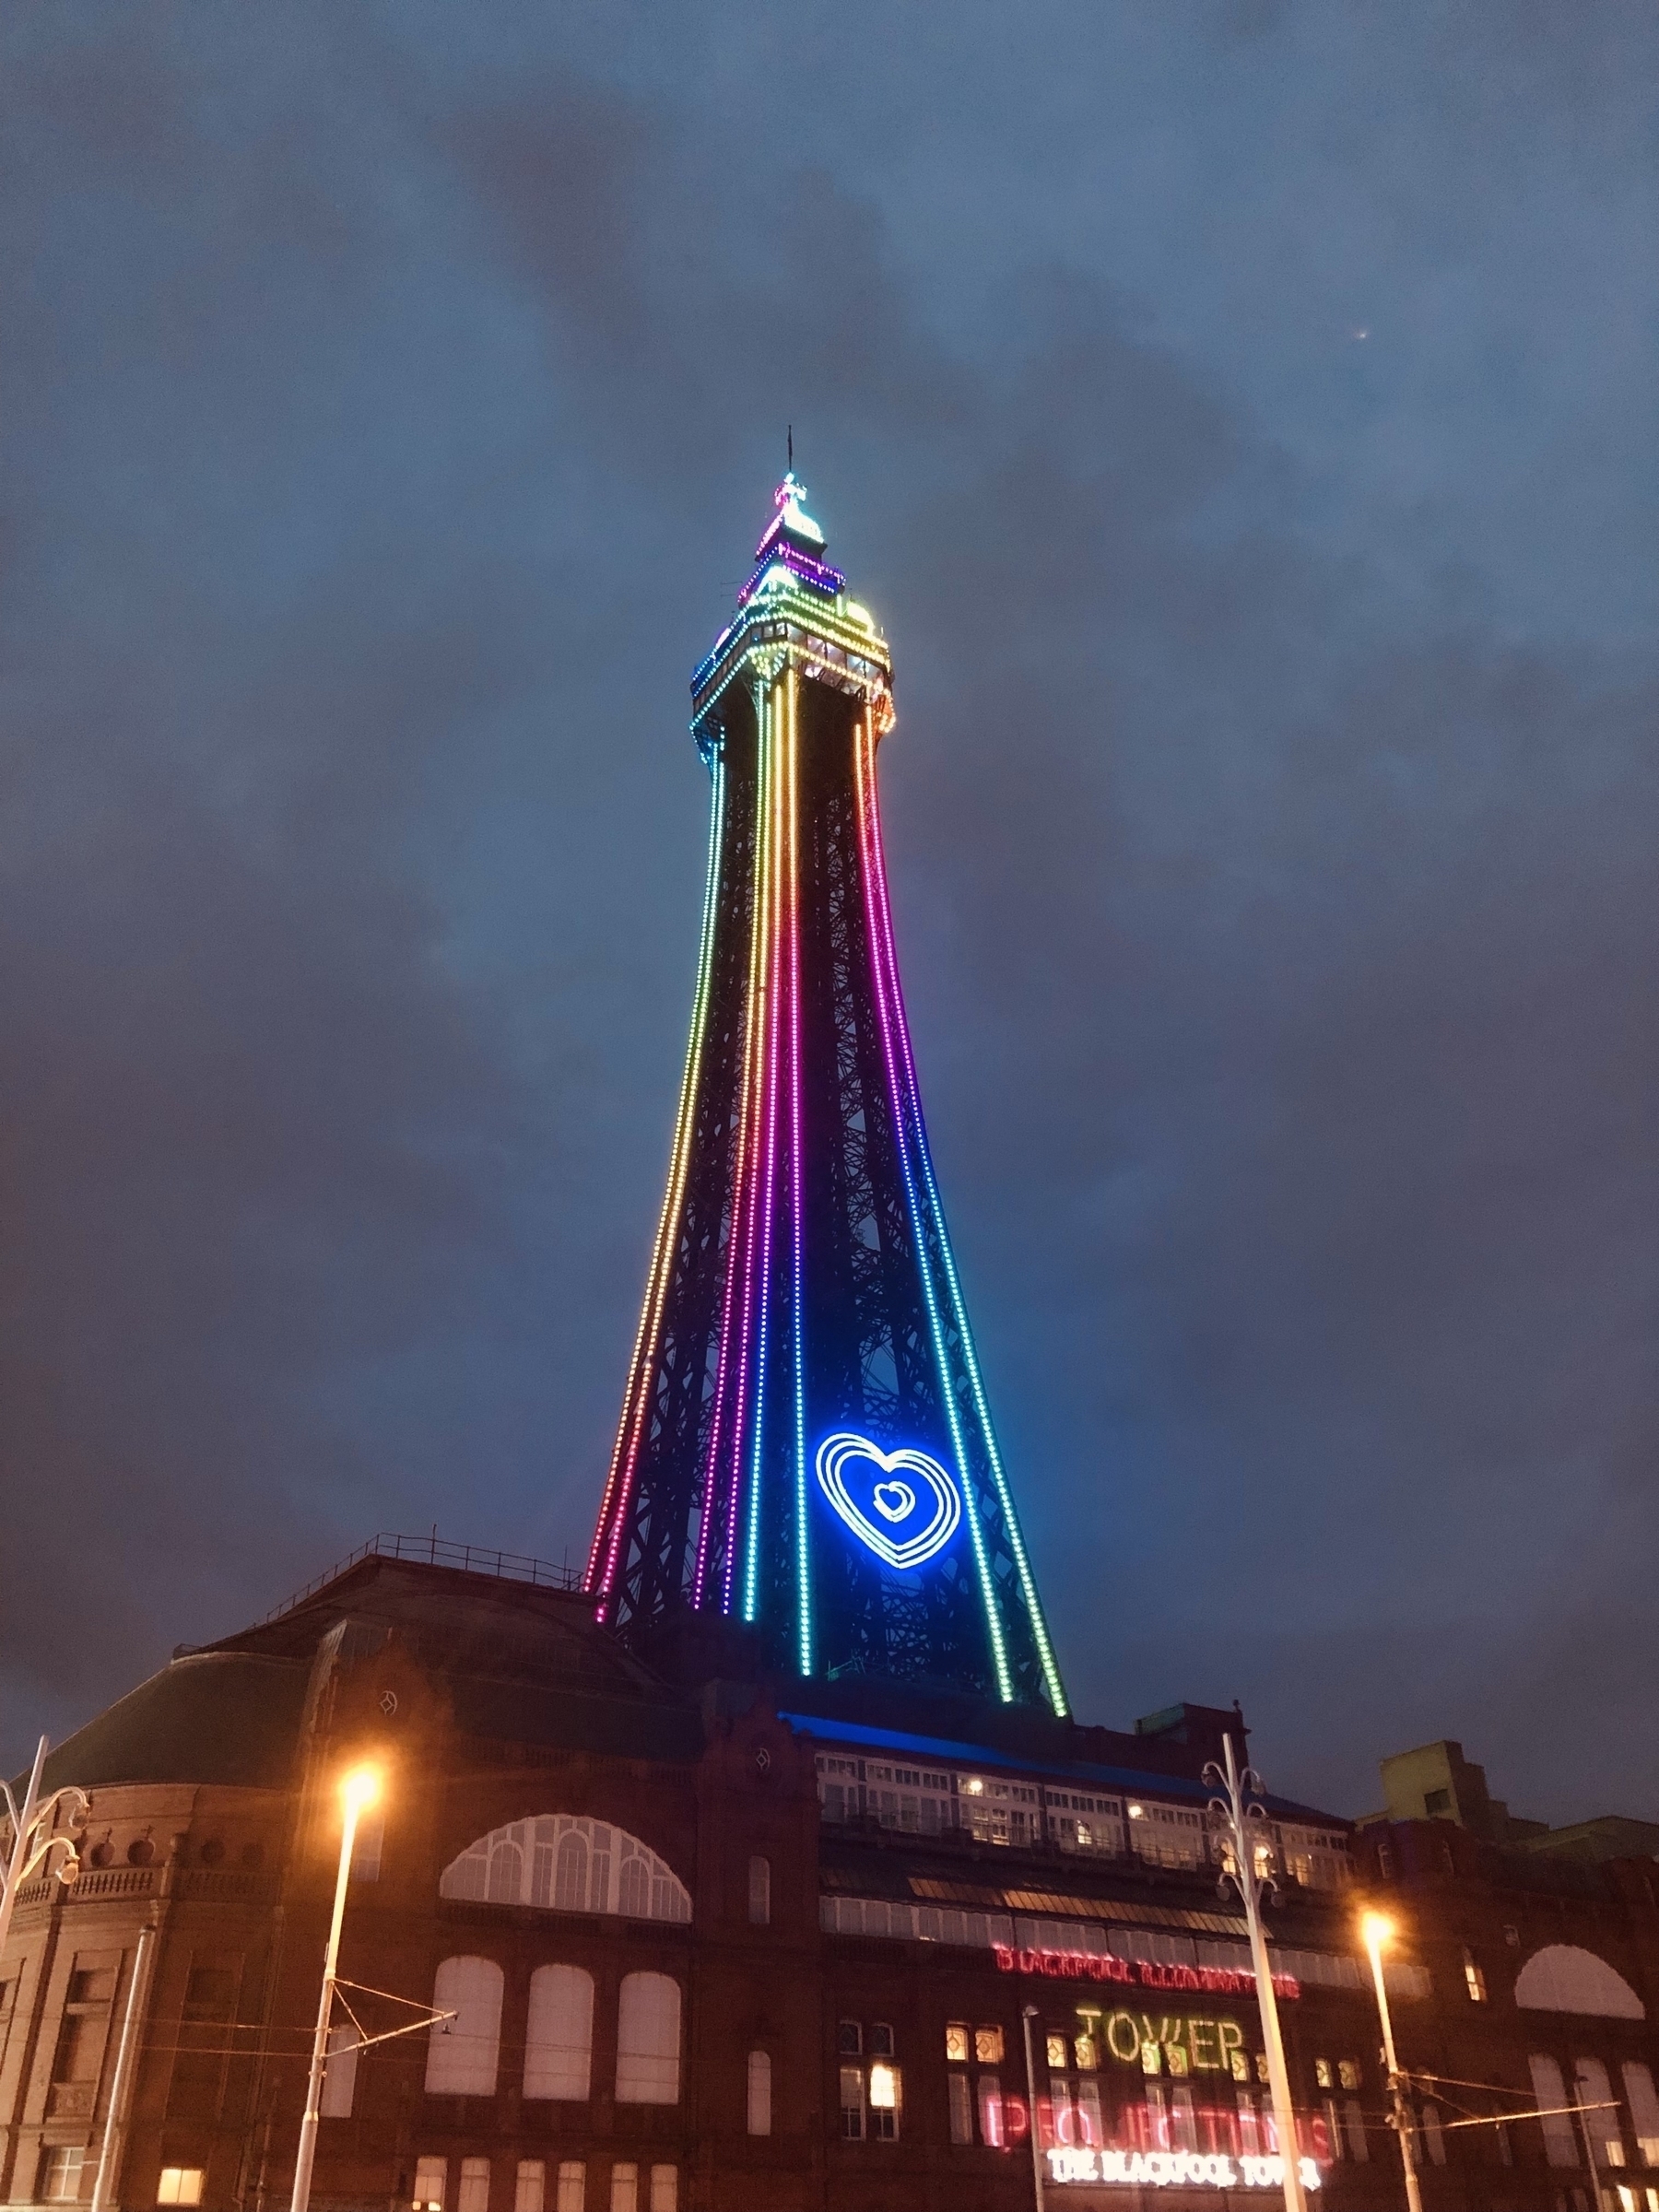 Blackpool tower at night. Rainbow lit